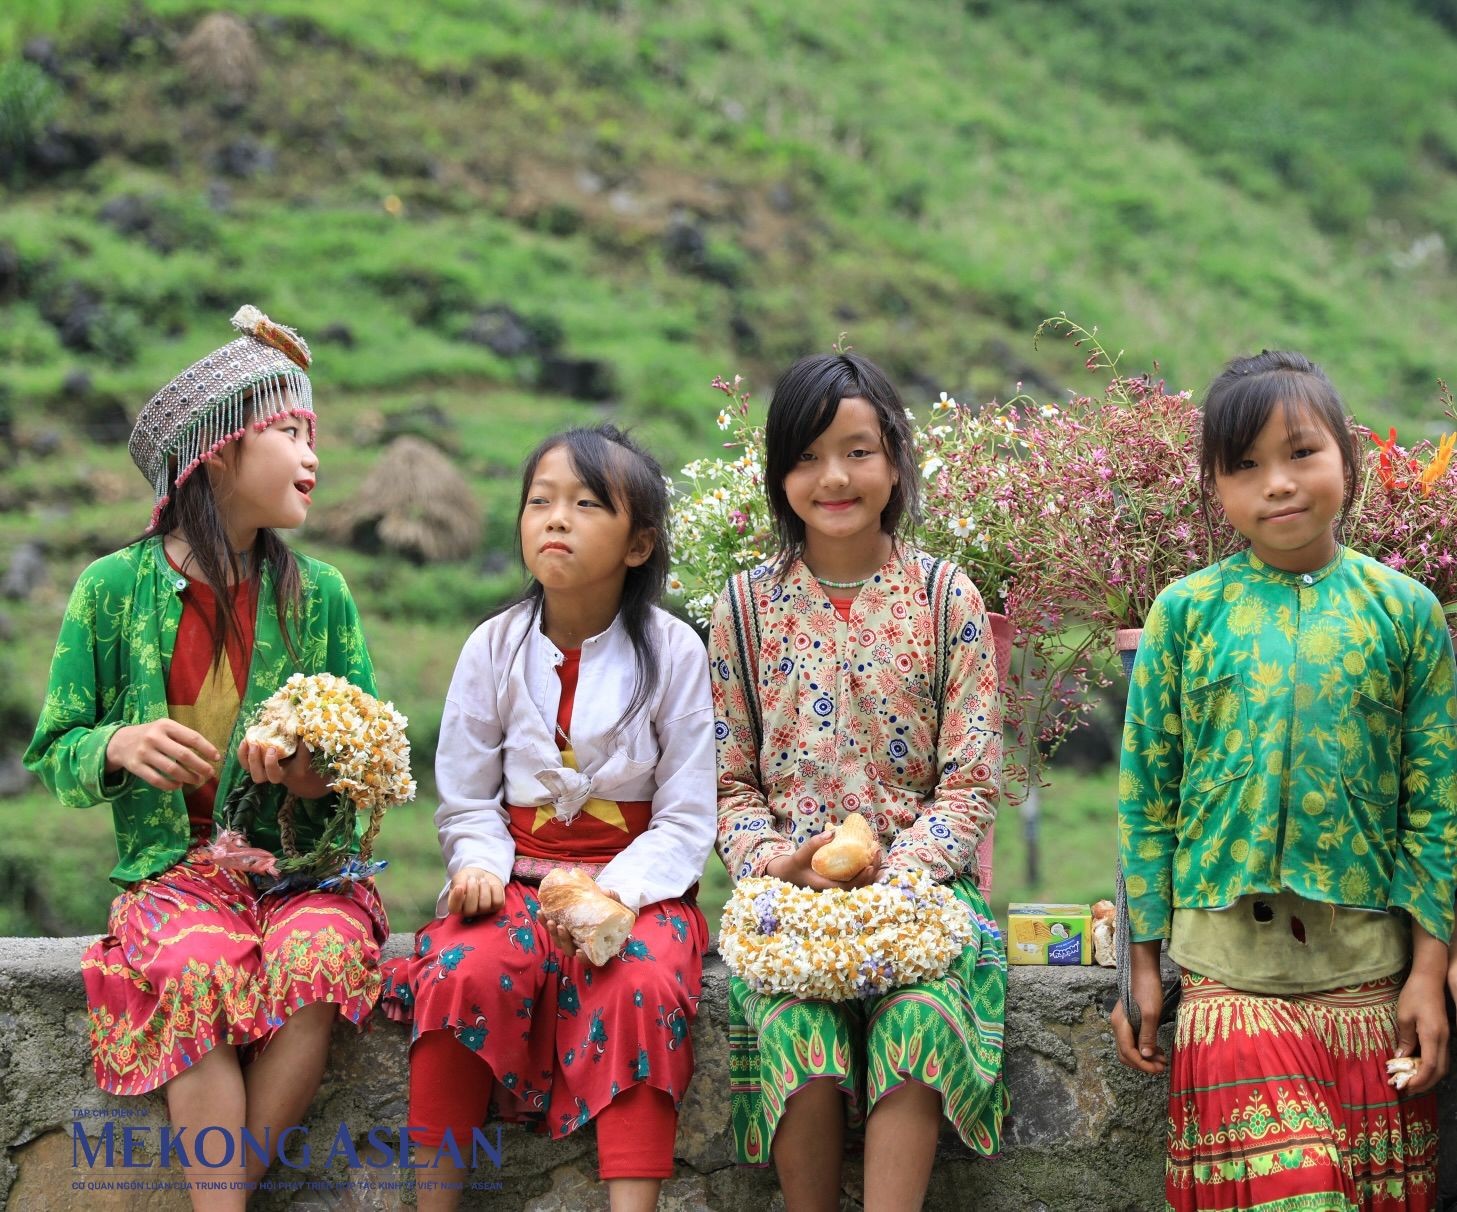 Những đứa trẻ gùi hoa lên dốc núi tại Cao nguyên đá Đồng Văn, một vùng đặc sản du lịch của Hà Giang. Ảnh: Mekong ASEAN ảnh 2